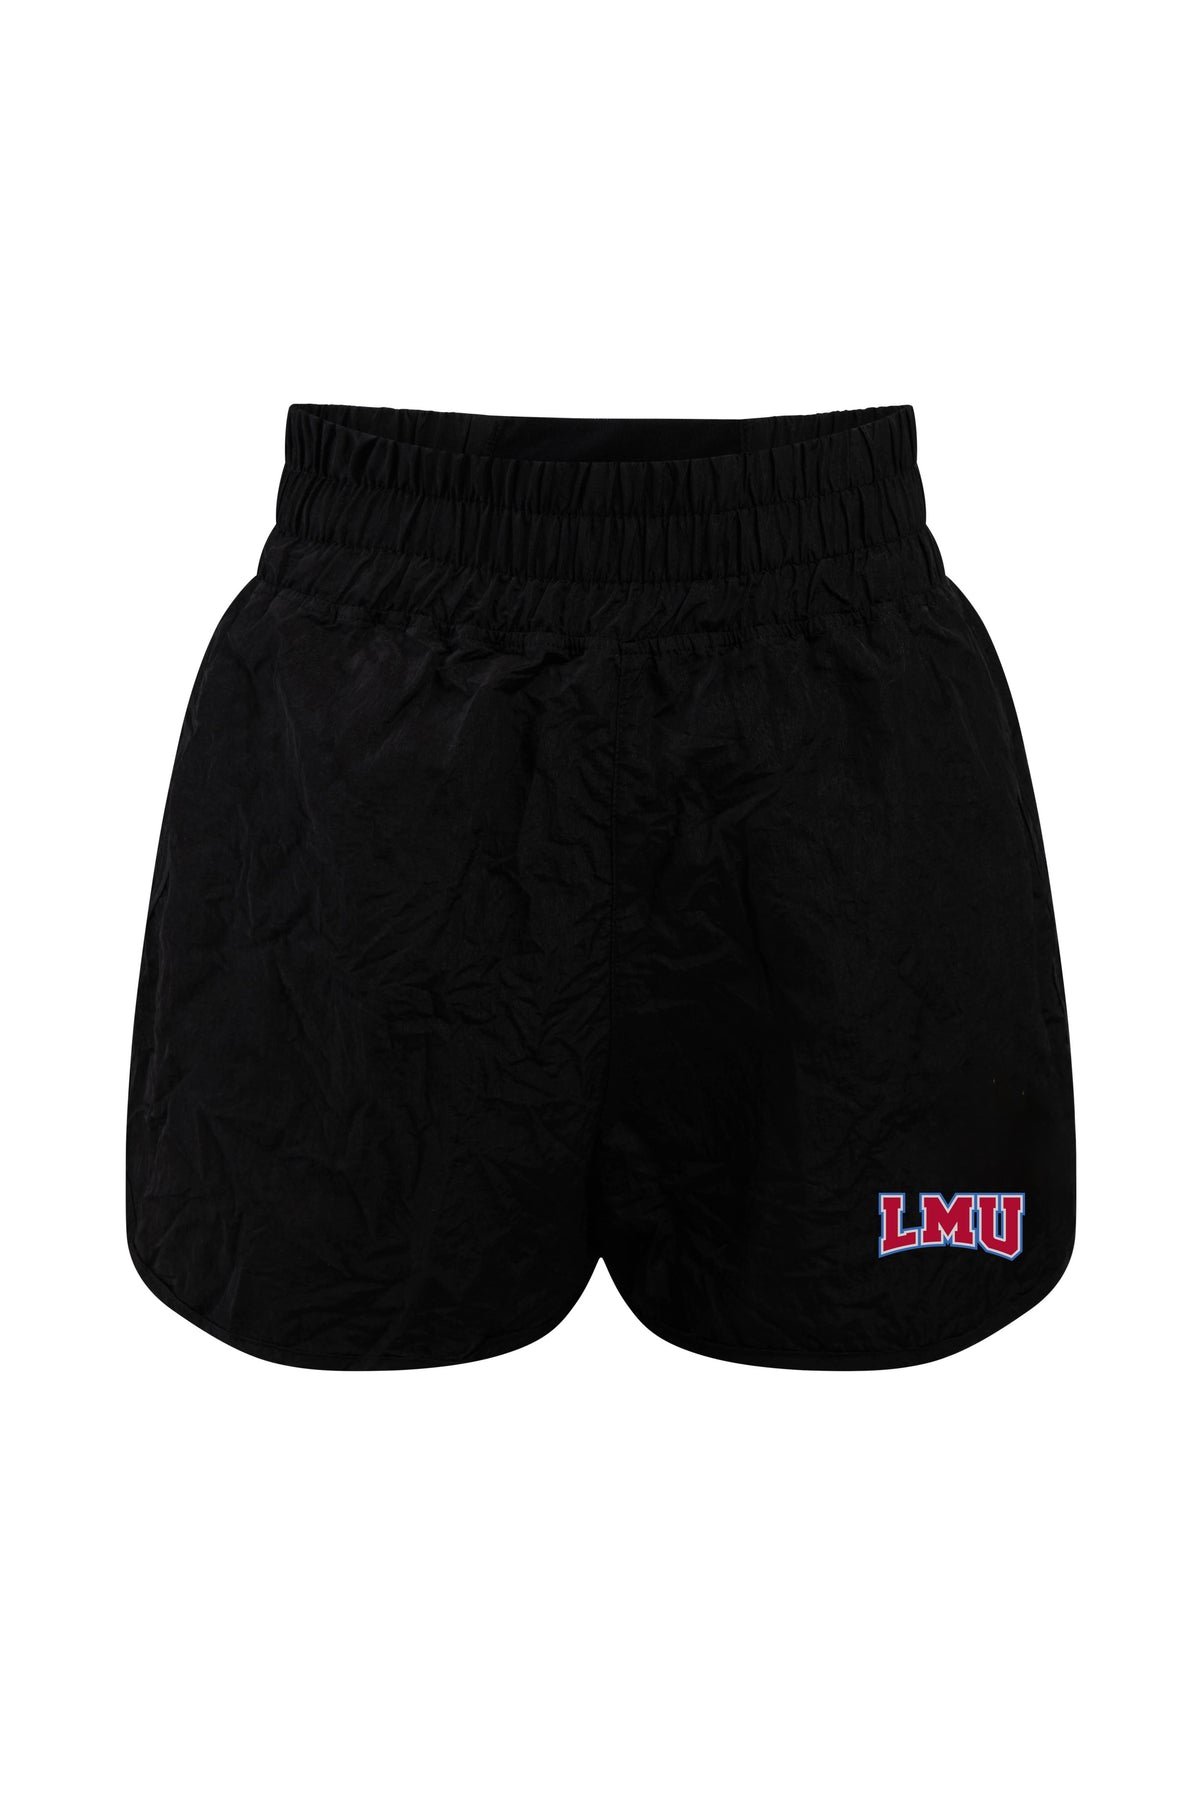 Loyola Marymount University Boxer Short